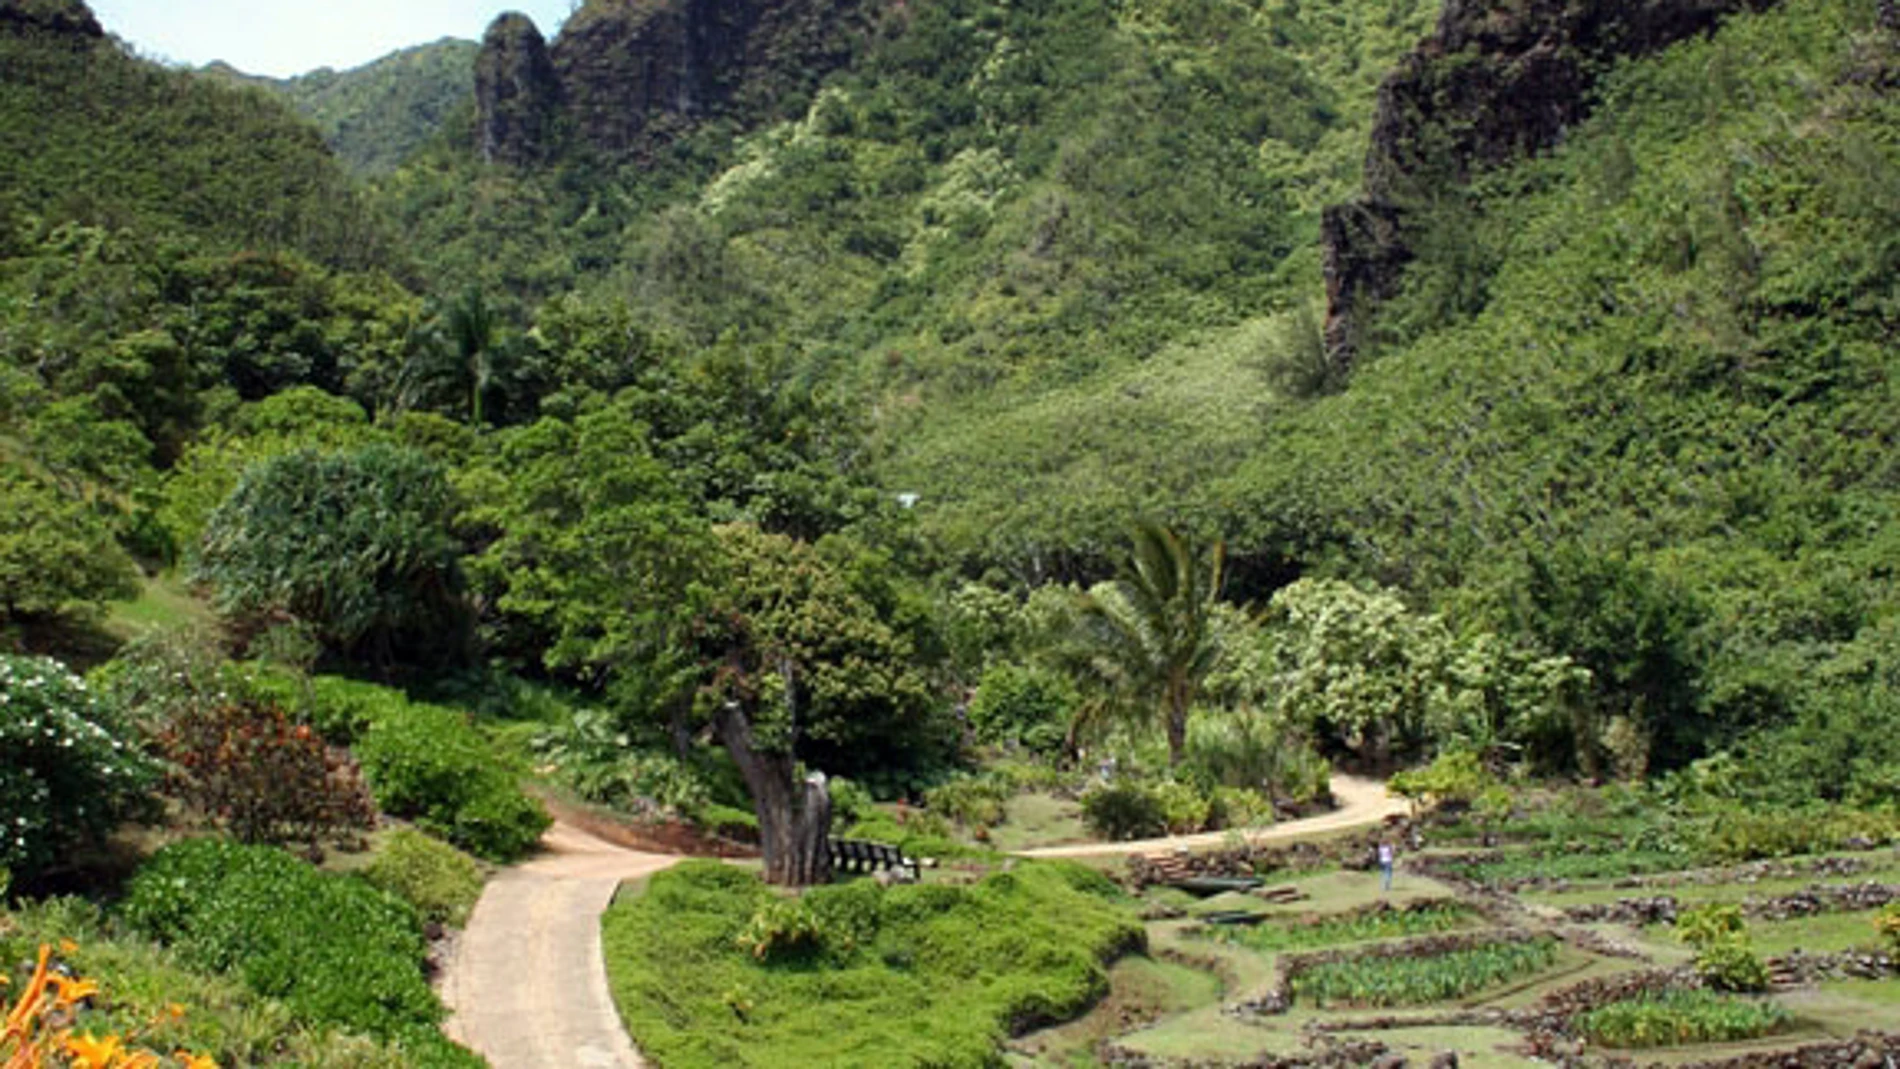 Hawaii es puerta de entrada de numerosas especies invasoras, tanto animales como plantas